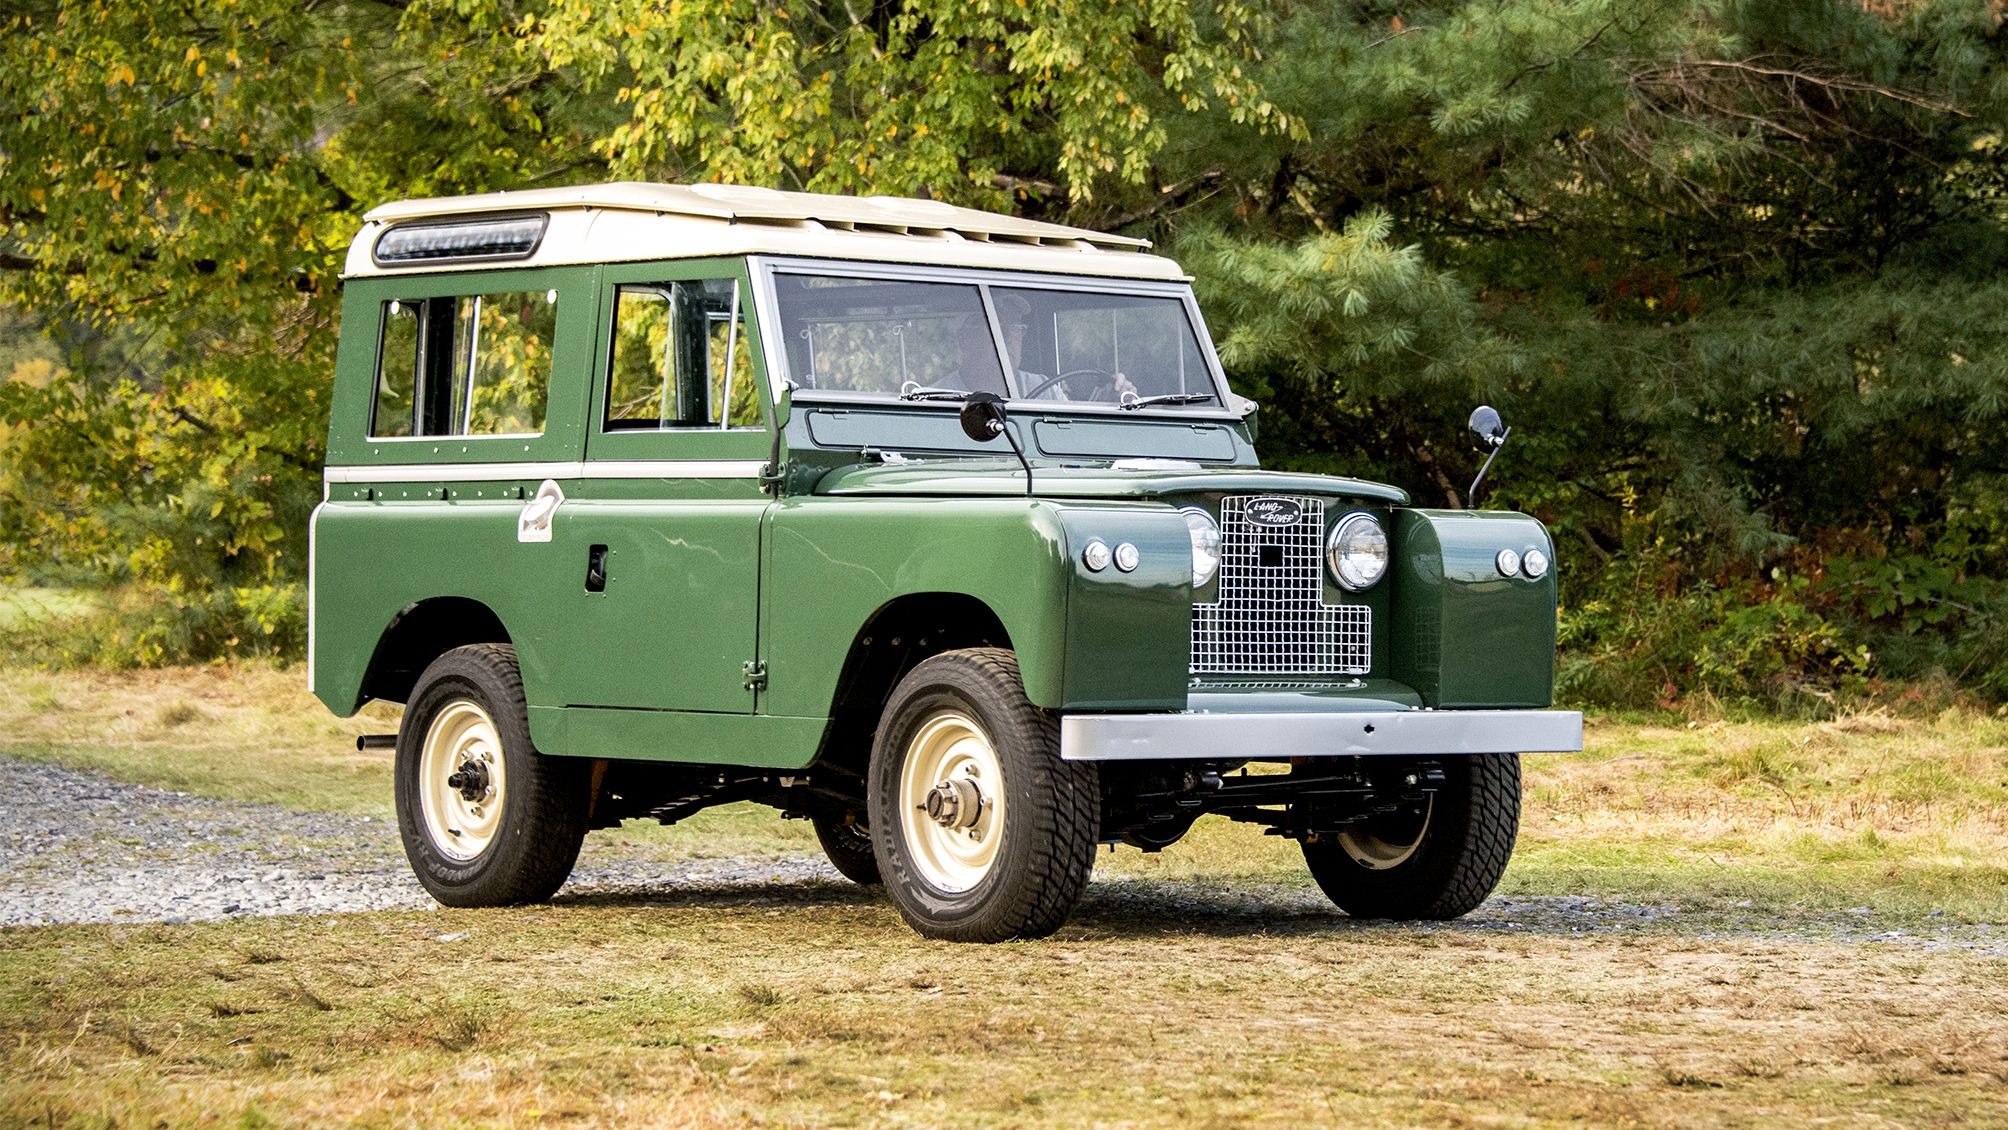 Ter ere van een beetje schotel Land Rover history: from the Series I to the Defender